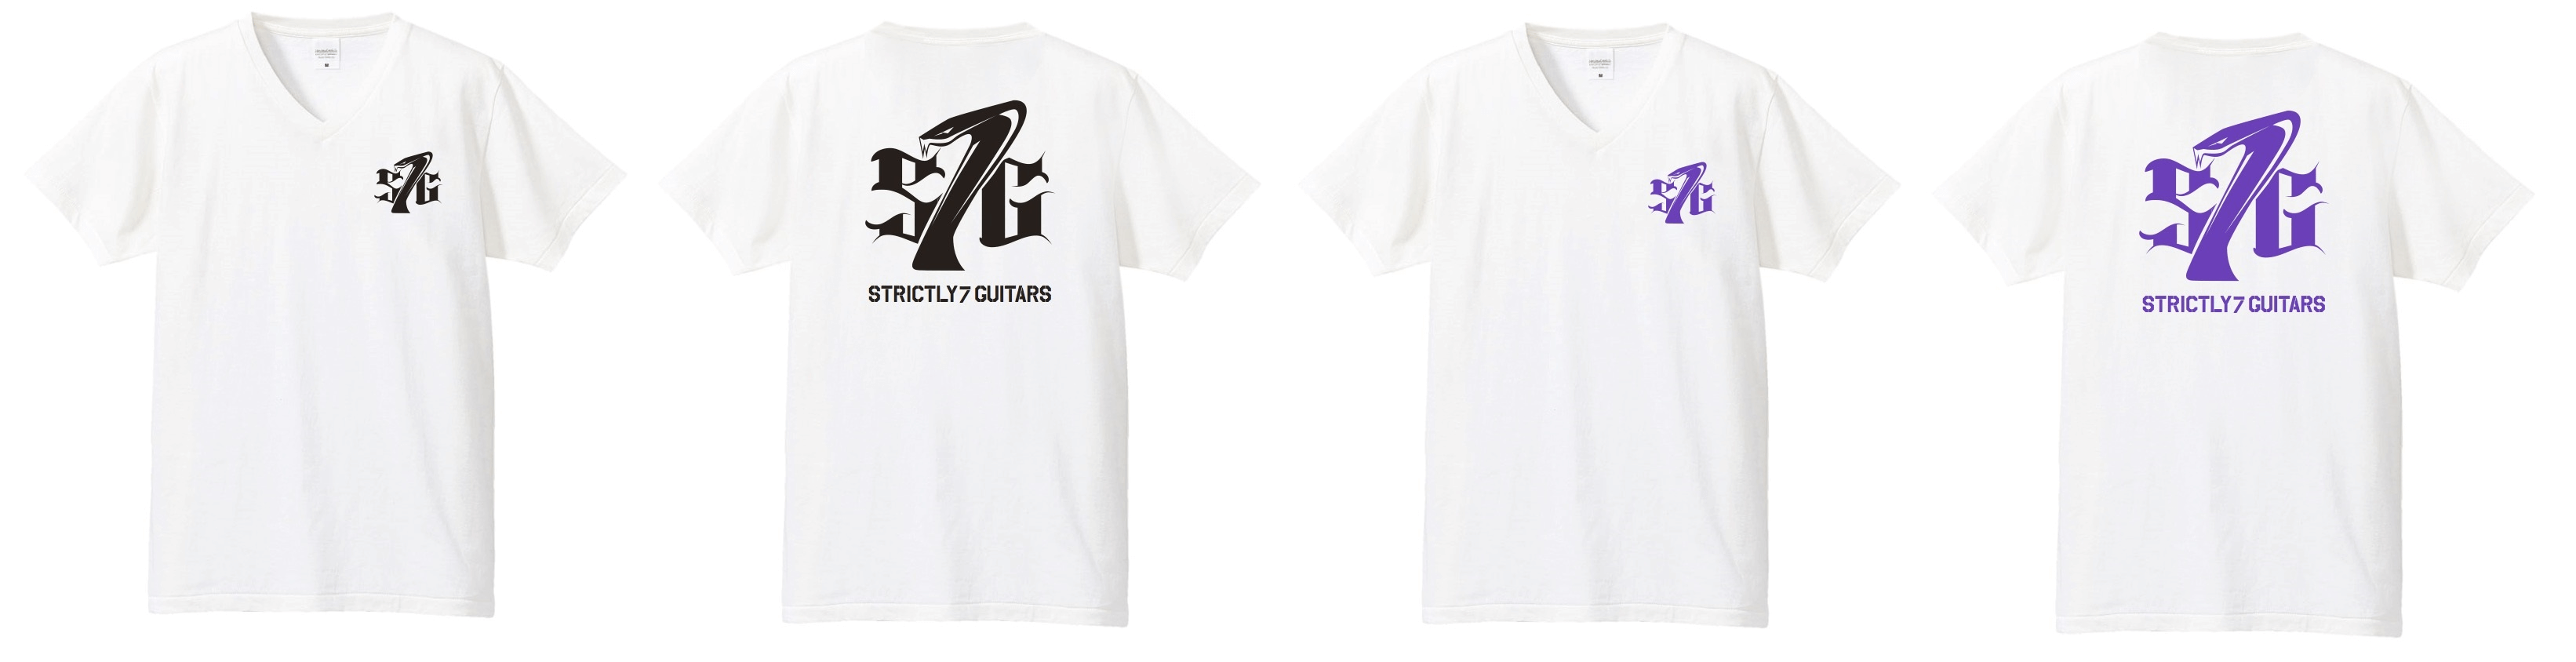 S7G T-Shirt S7T